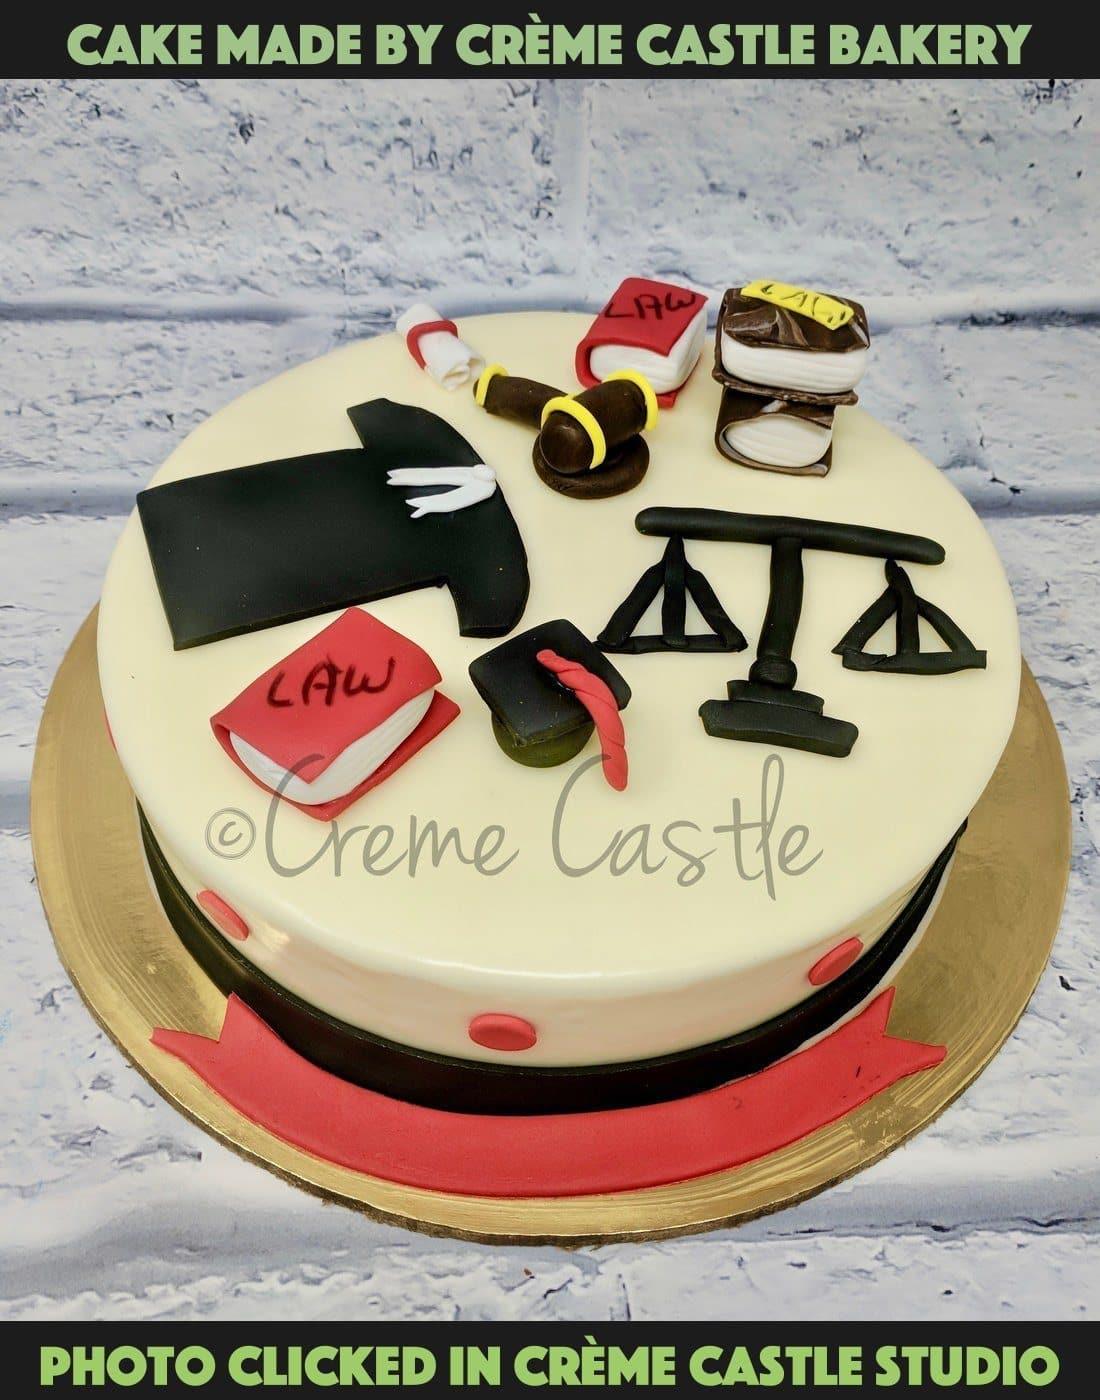 Lawyer Theme Cake | Lawyer Cake | Lawyer Birthday Cake – Liliyum Patisserie  & Cafe